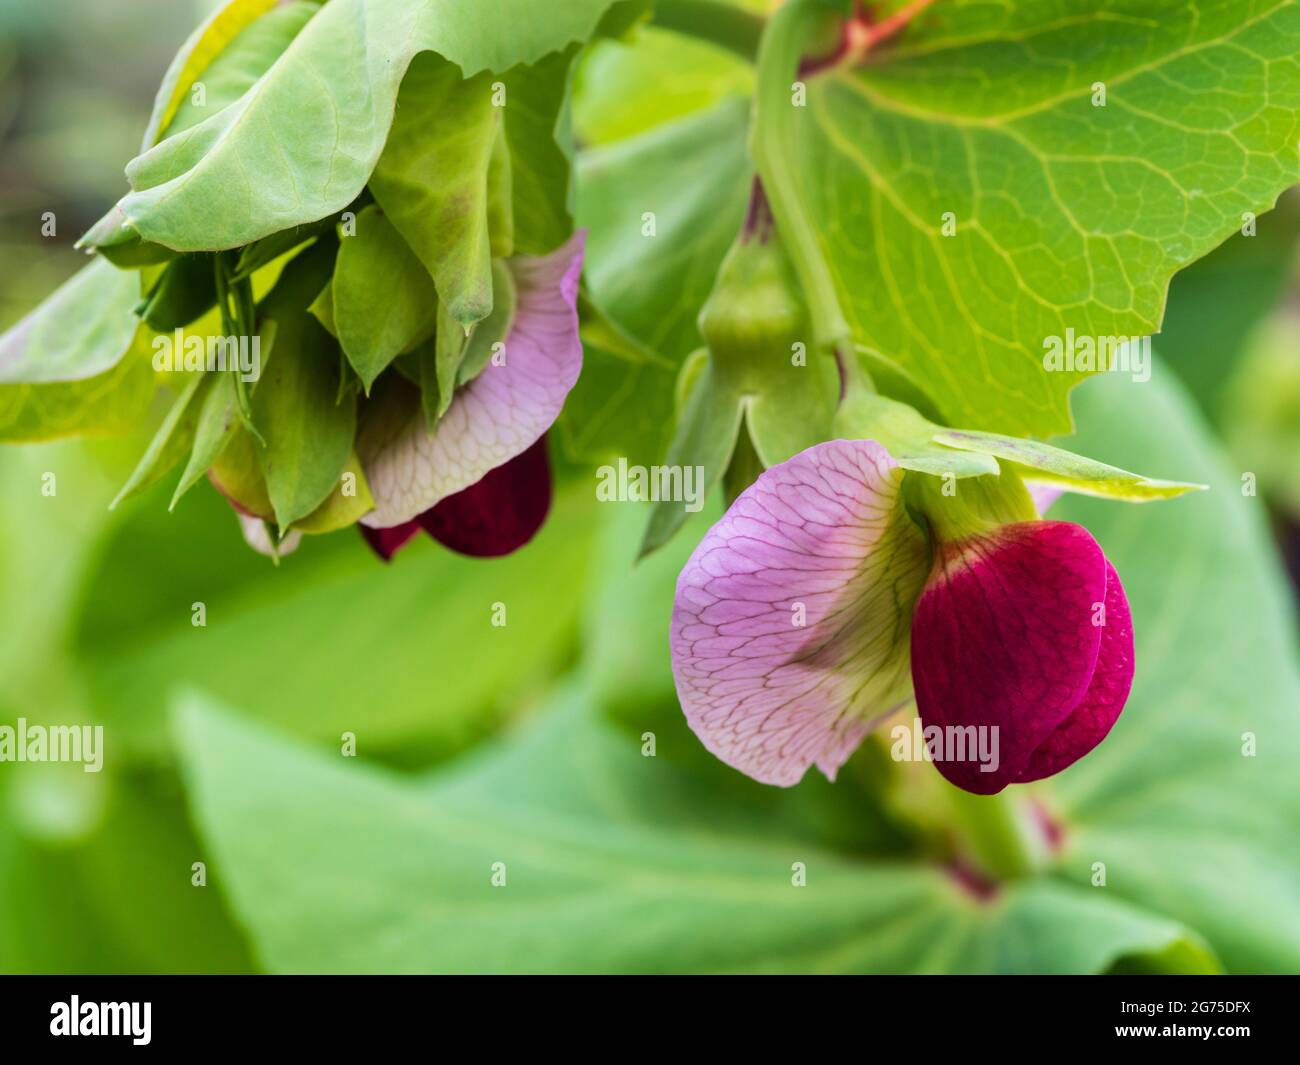 Flor púrpura y lila del guisante morado de mangoto, Pisum sativum 'Shiraz' Foto de stock